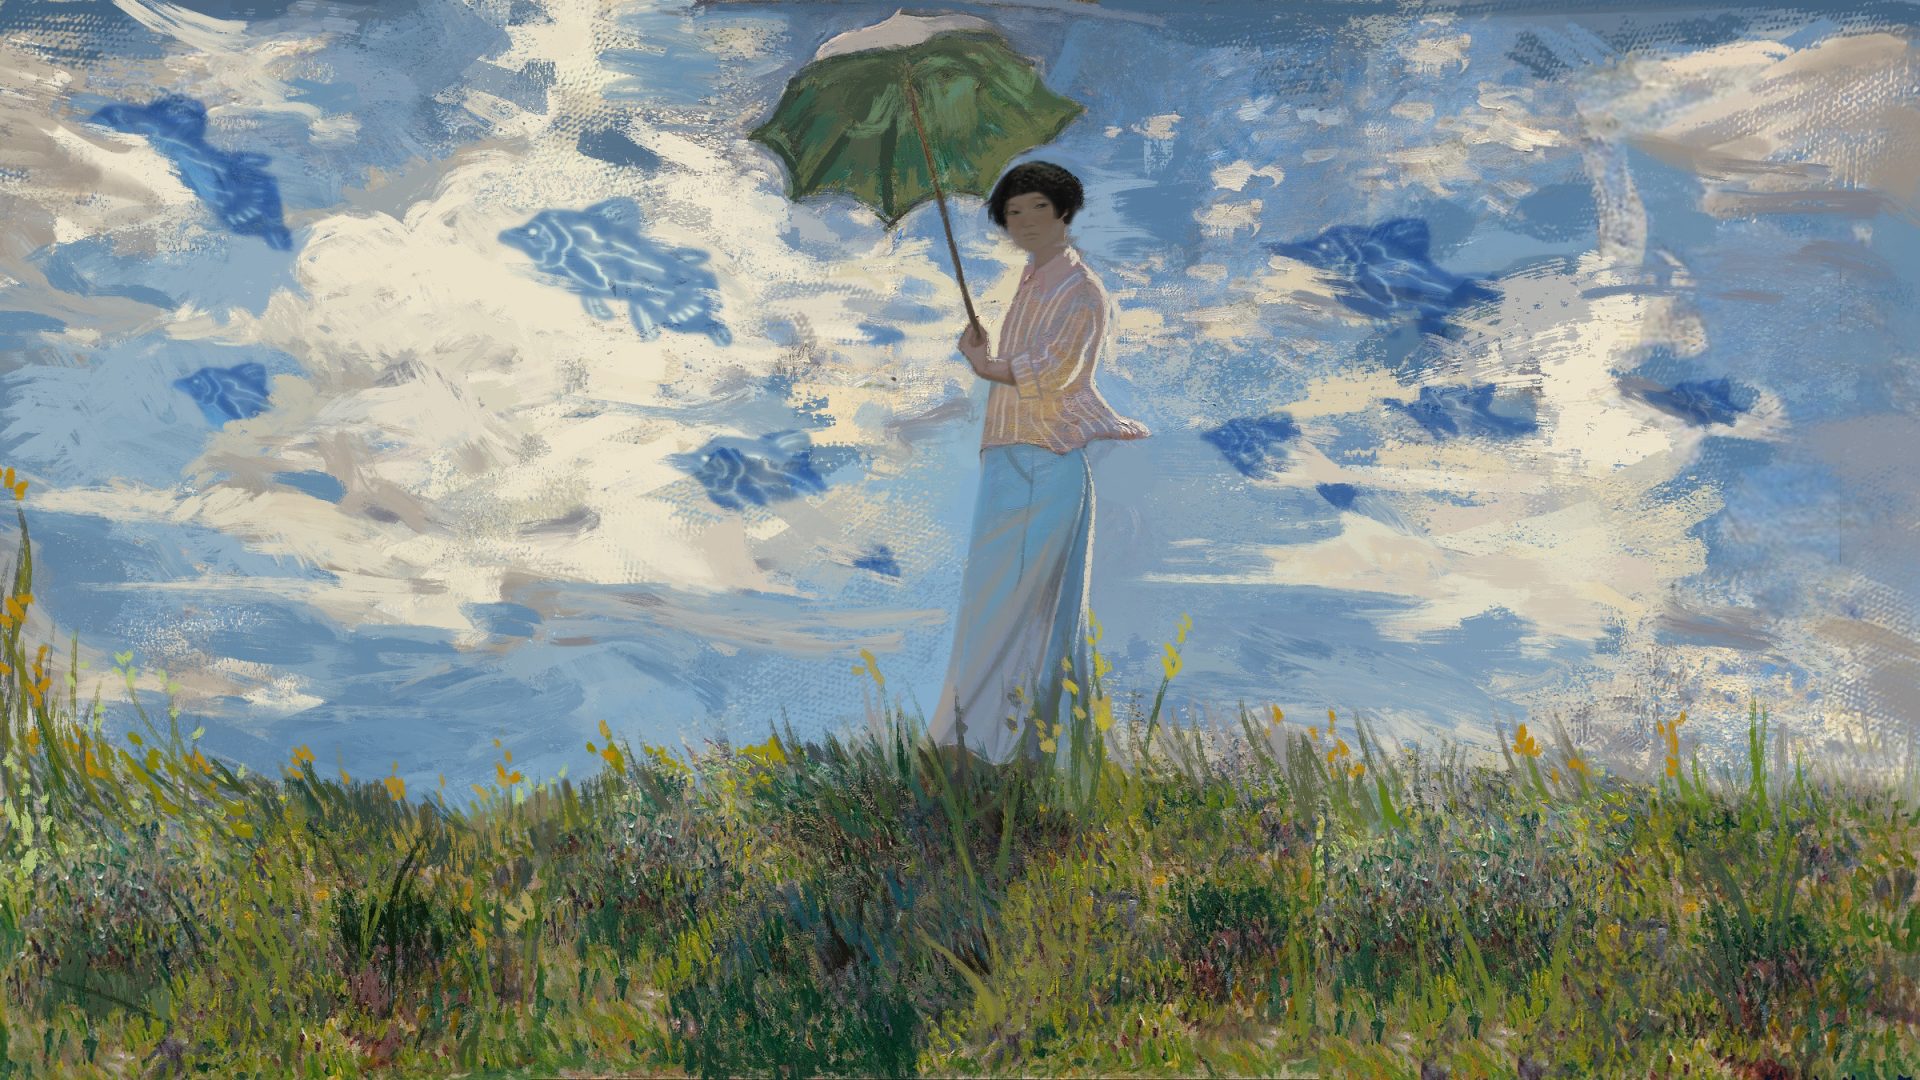 Retrato de Meemann Chang al estilo de "Mujer con sombrilla" del impresionista francés Claude Monet.